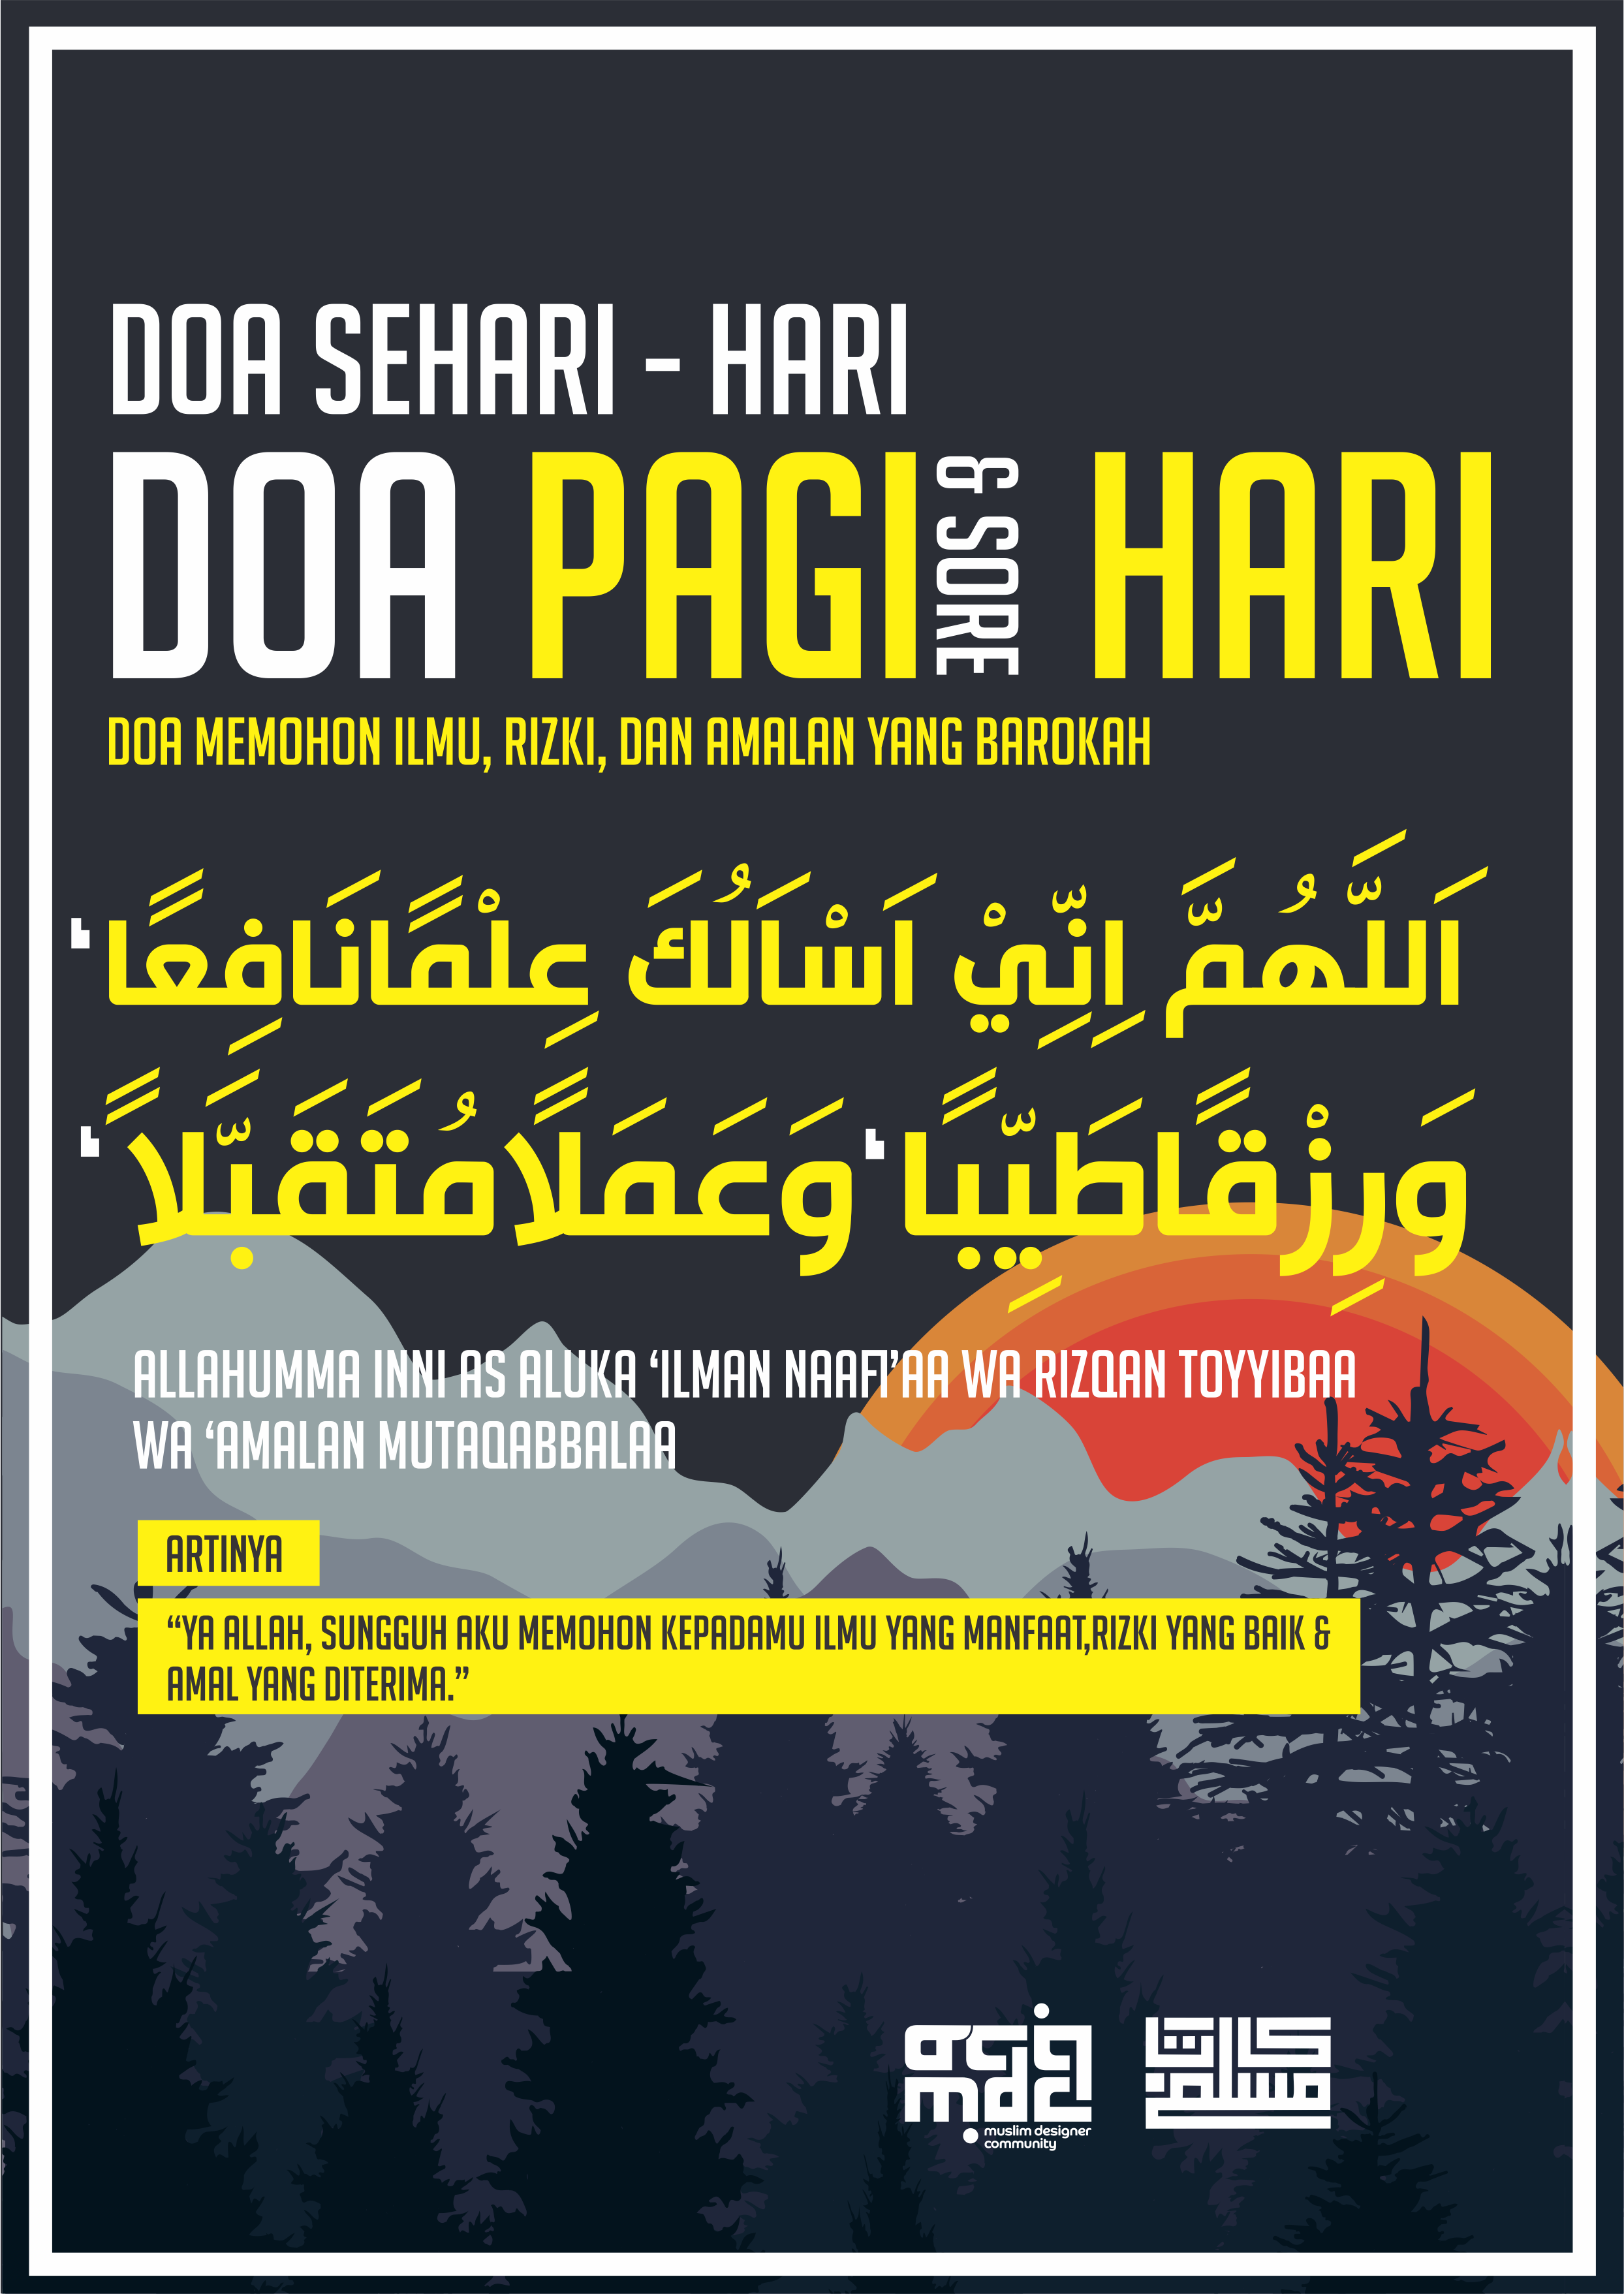 Download Gratis Desain Poster Dakwah Karya Kata Muslim Hello Hijabers